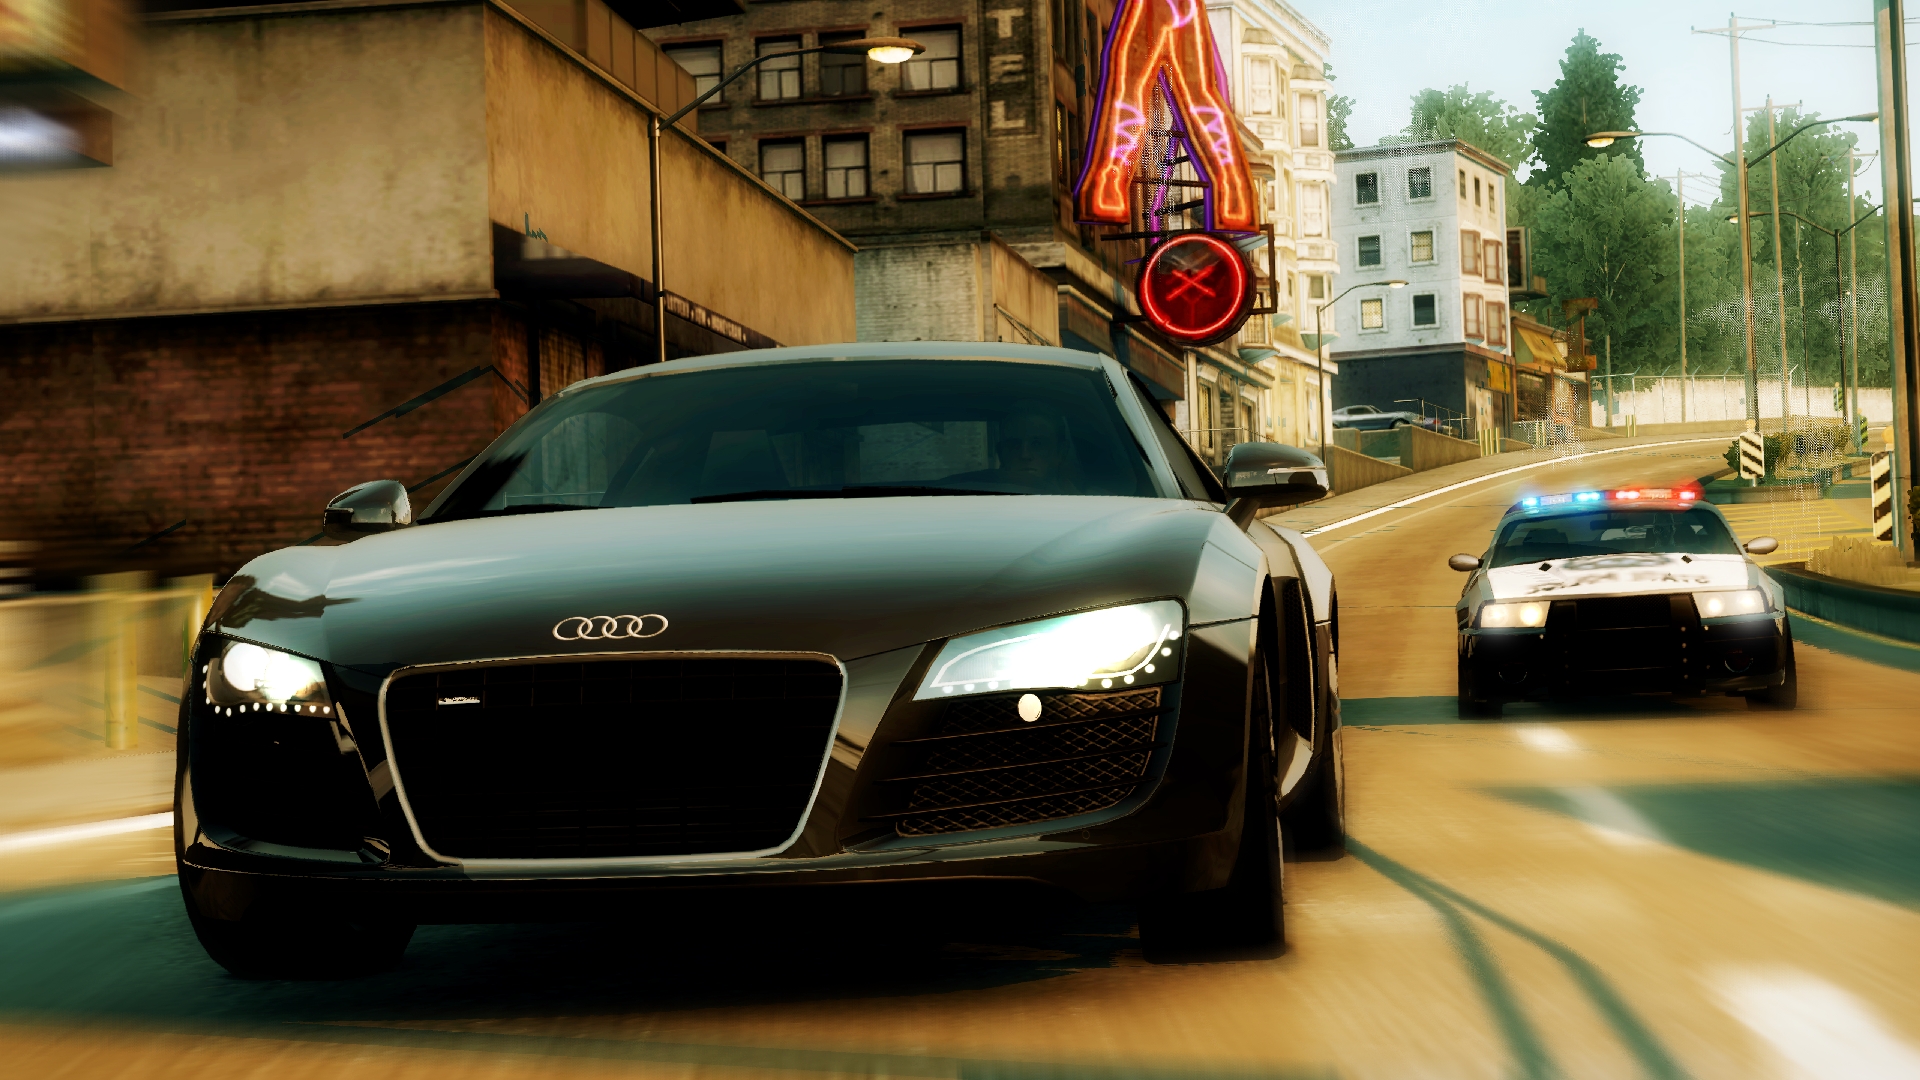 laag Oprecht Alternatief Need For Speed Undercover,Need for Speed: Undercover Wii Cheats -  GameRevolution